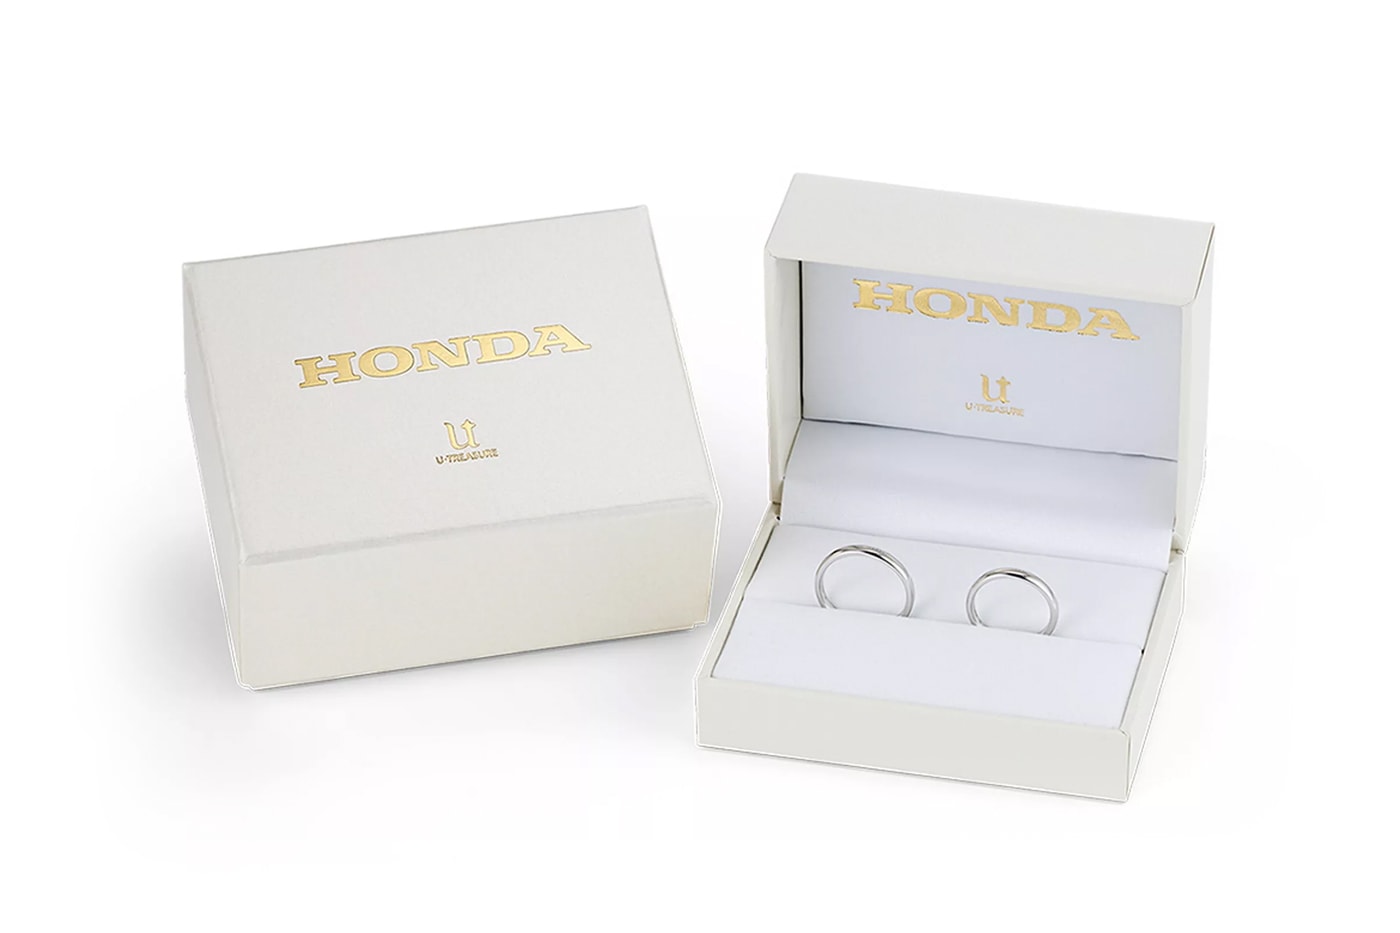 ホンダのマークが刻印されたプラチナ製のマリッジリングが発売 U-Treasure Honda Wedding Rings Release Info Date Buy Price 